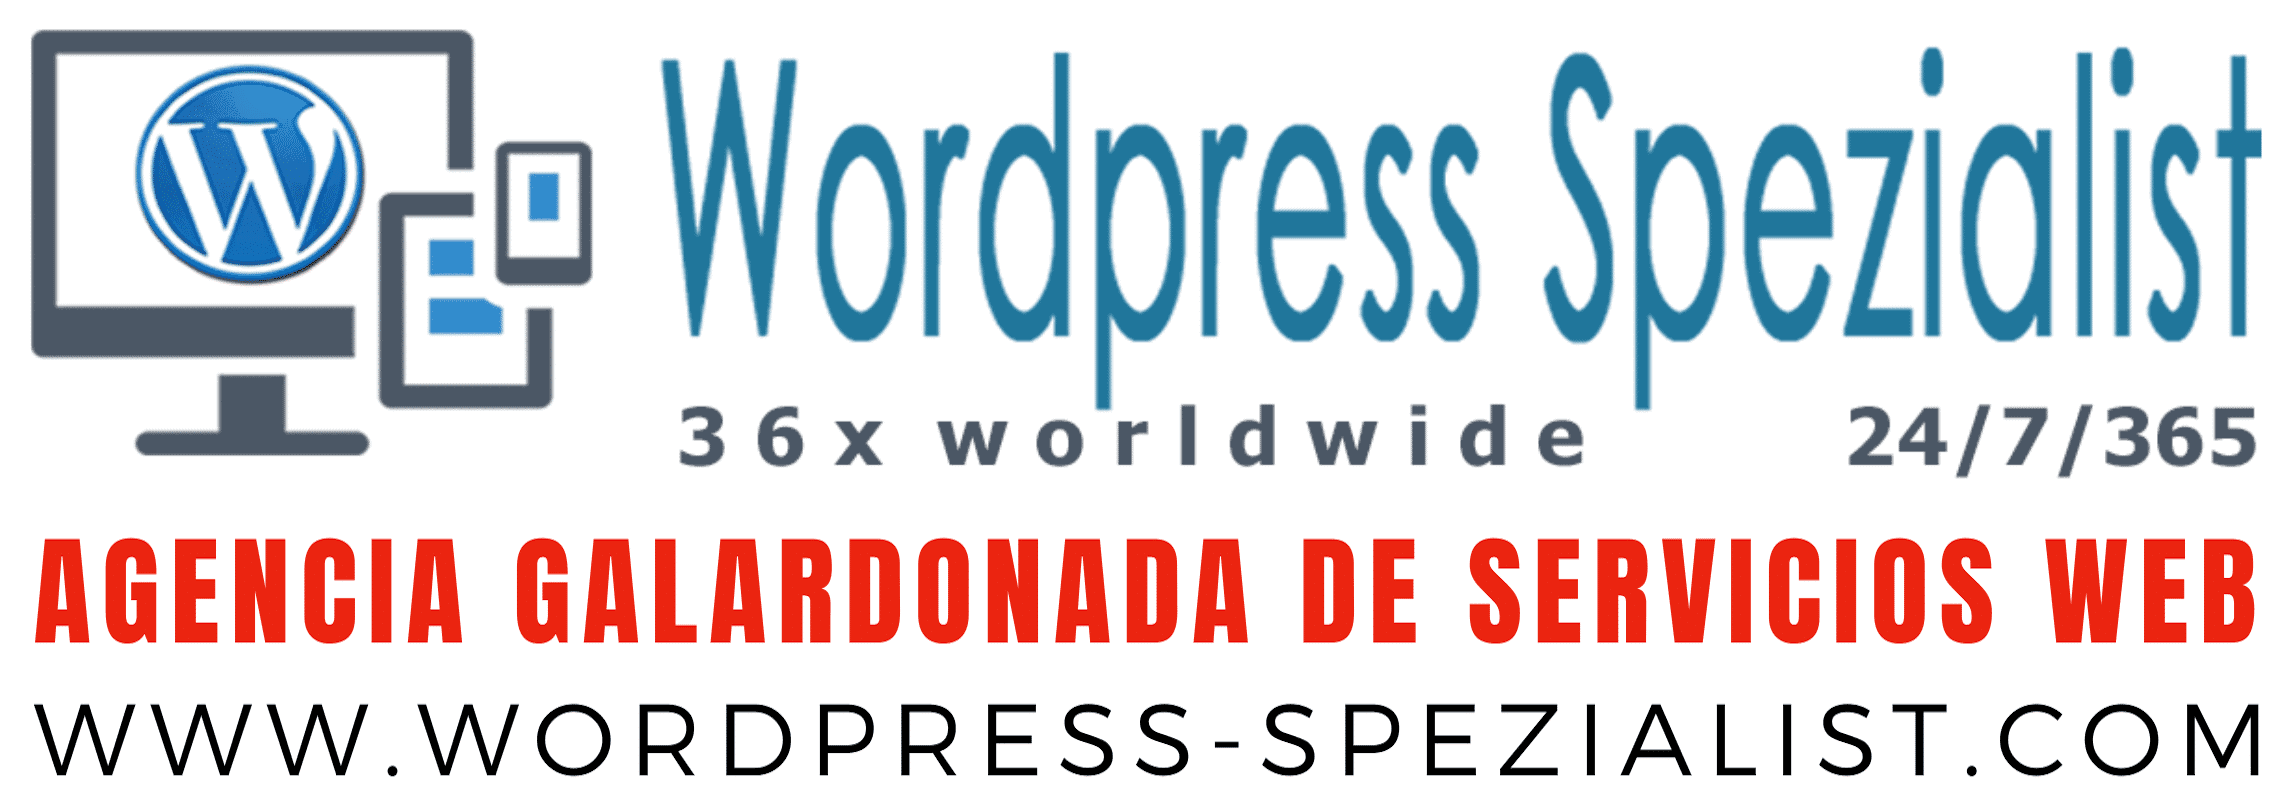 wordpress-spezialist.com